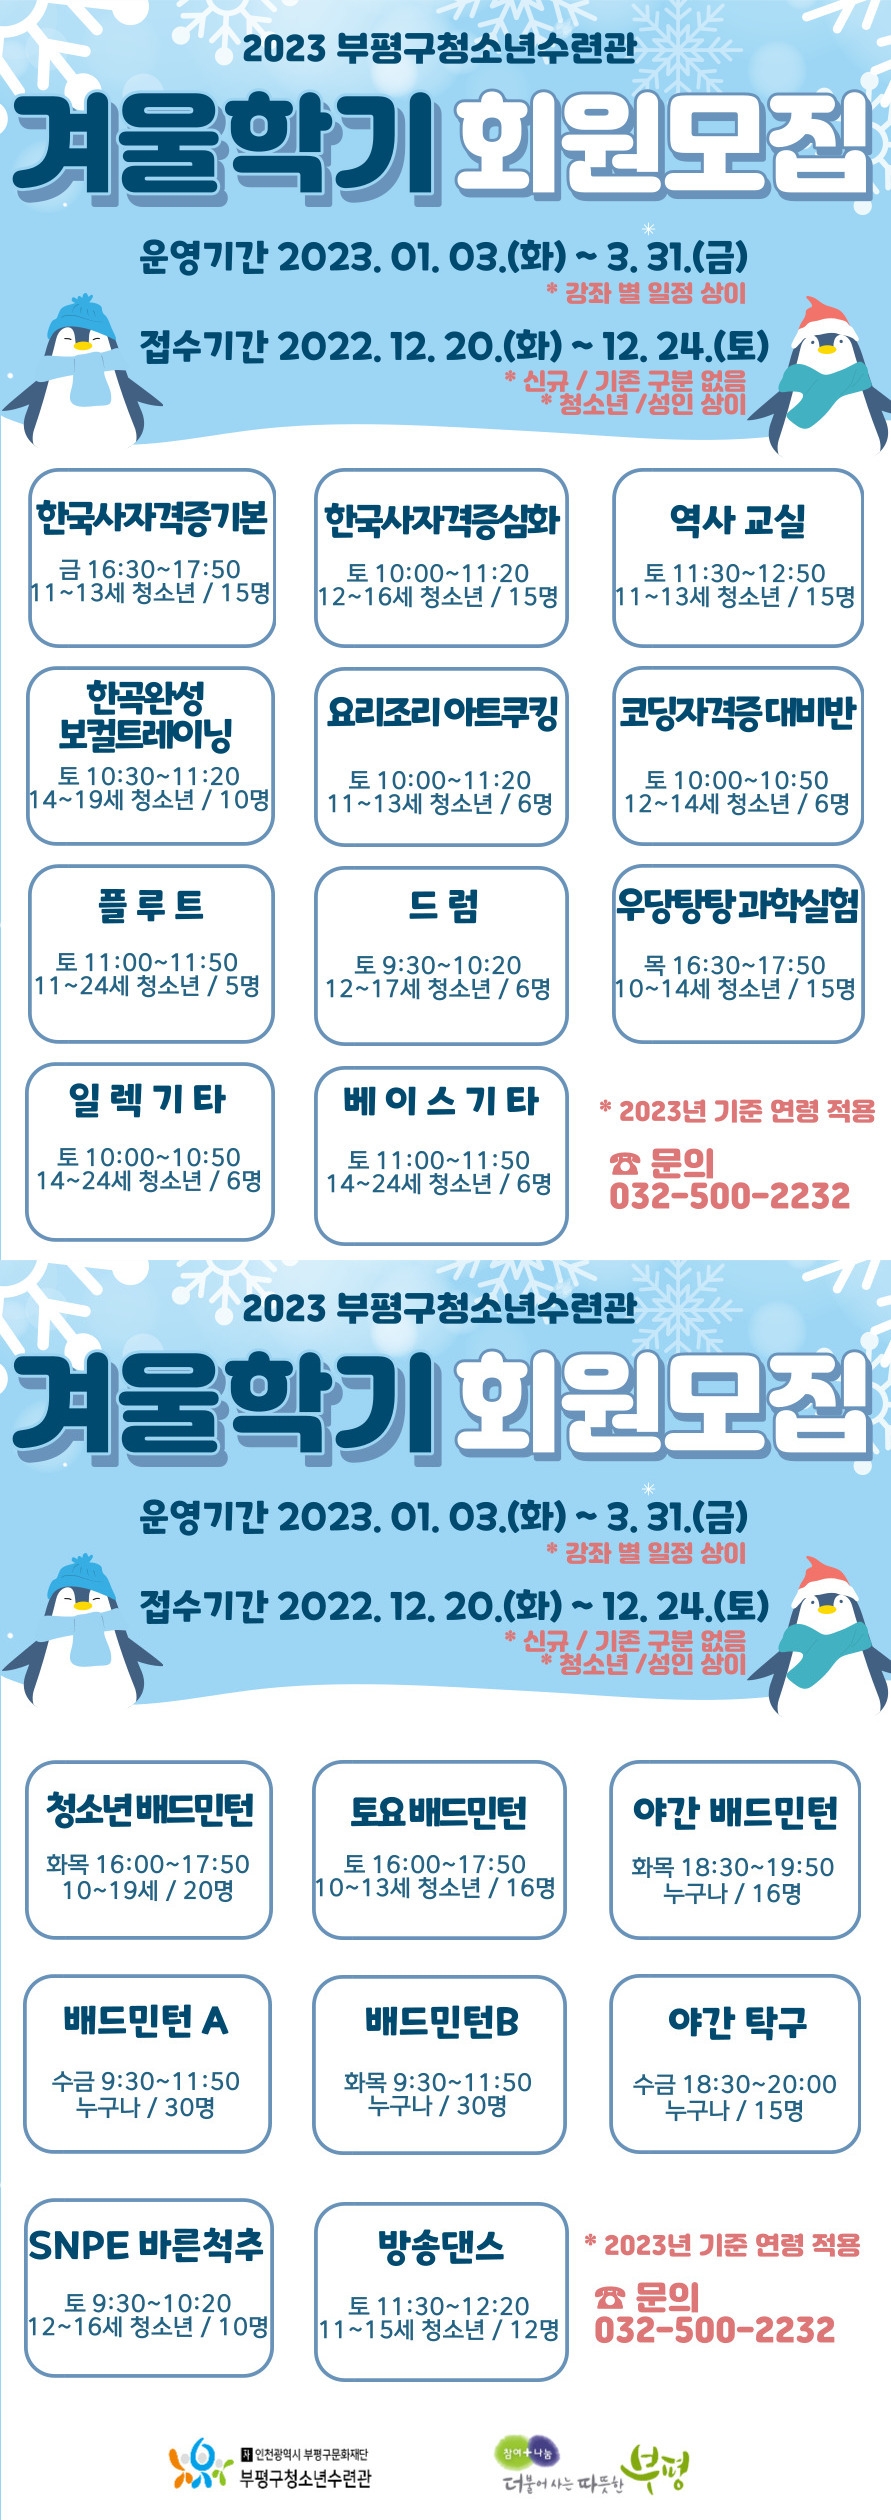 인천 부평구 청소년수련관, 2023 교육문화 겨울학기 회원 모집